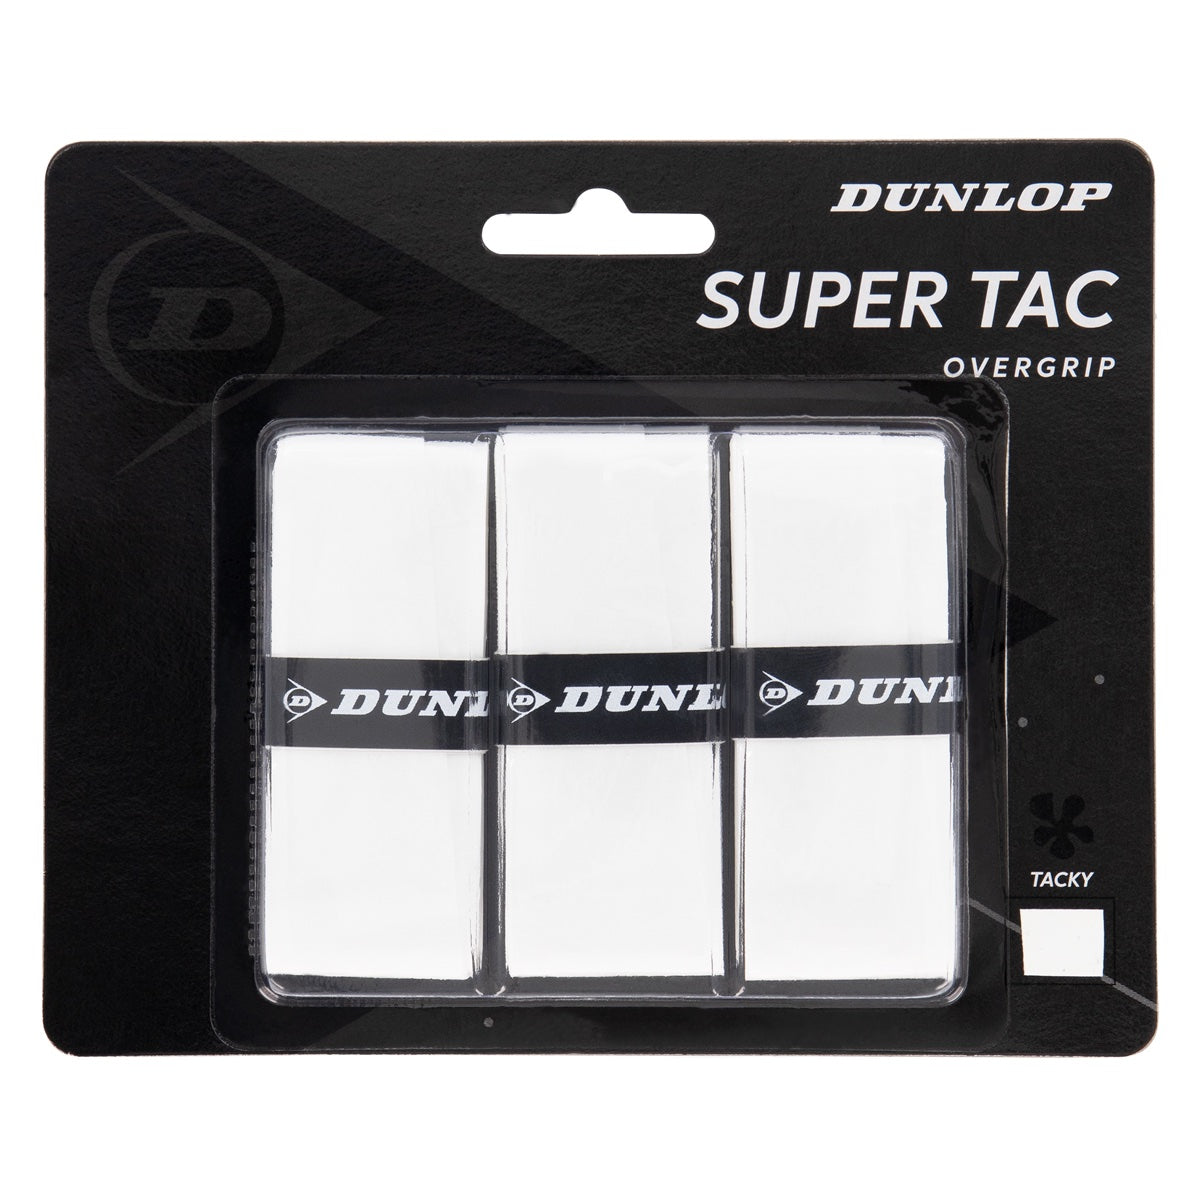 Dunlop Super Tac x3 overgrip